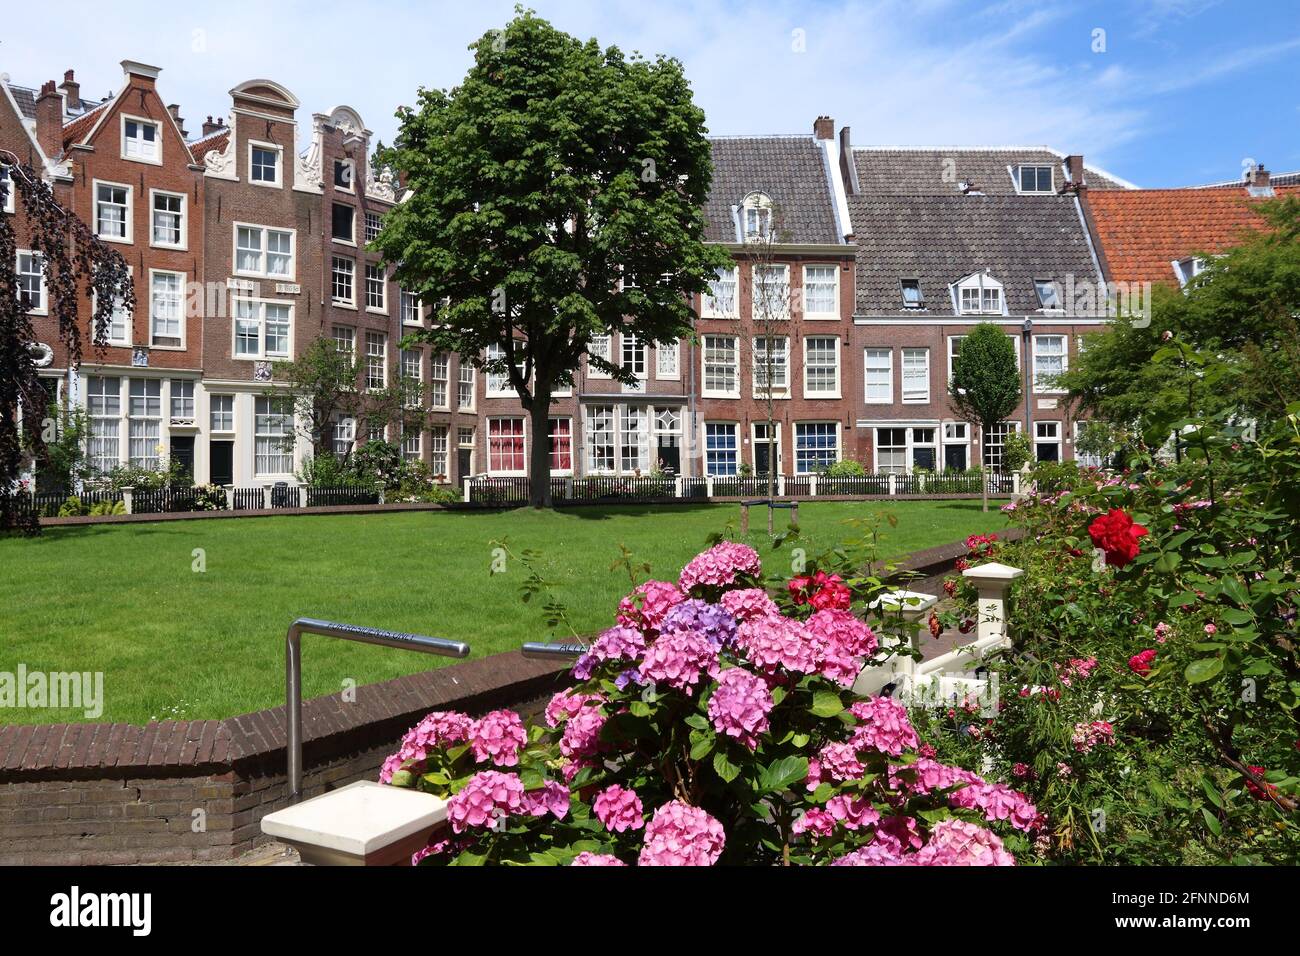 Amsterdam city landmark - Begijnhof residential buildings. Netherlands rowhouse. Stock Photo